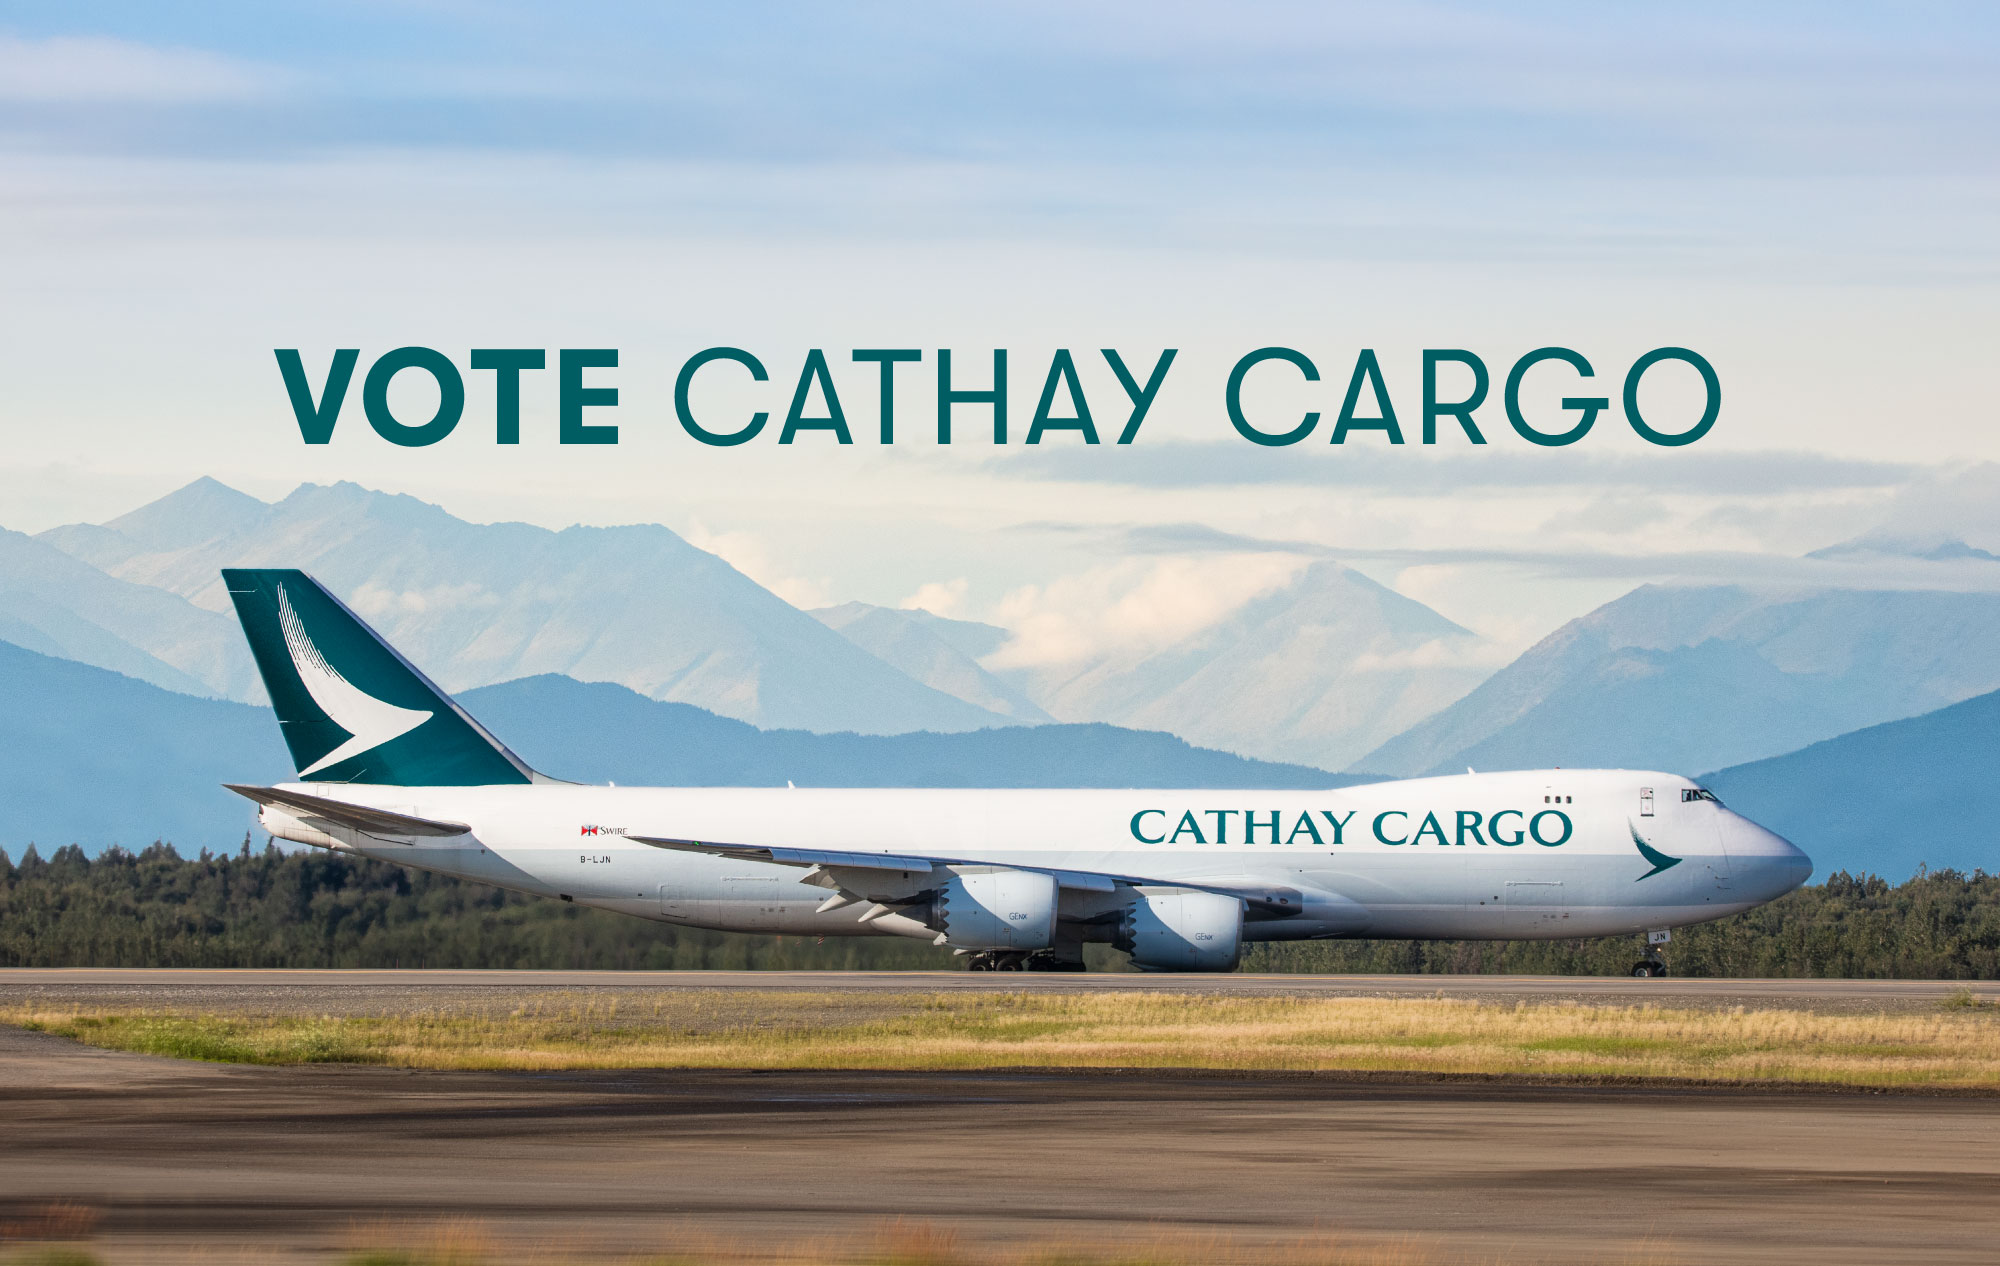 Vote Cathay Cargo hero image